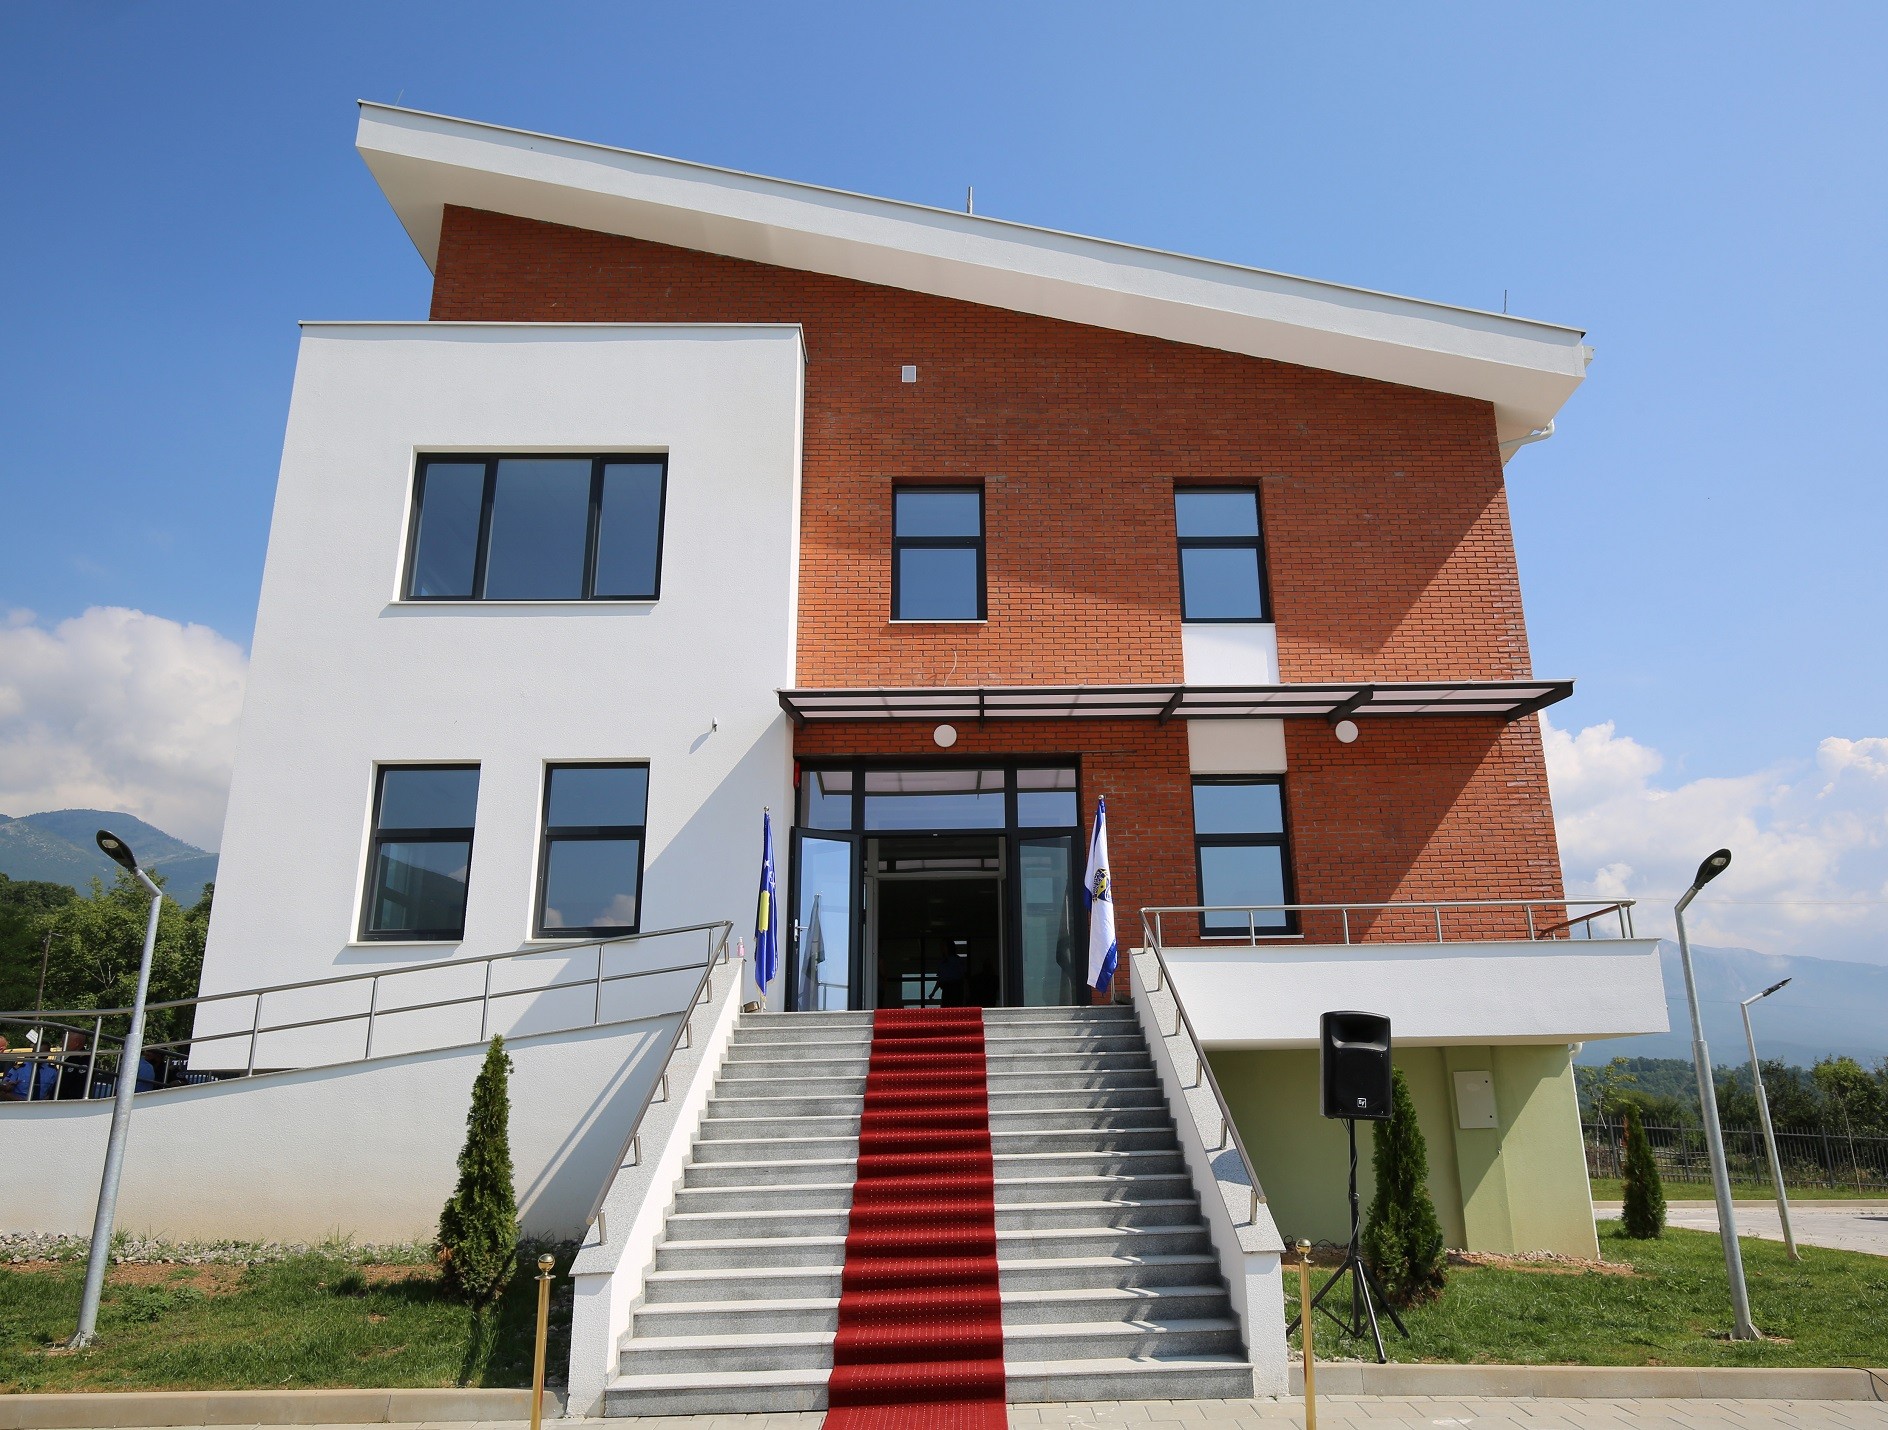  Përurohet objektit i ri i Stacionit Policor për Mbikëqyrje të Kufirit në Radavc  